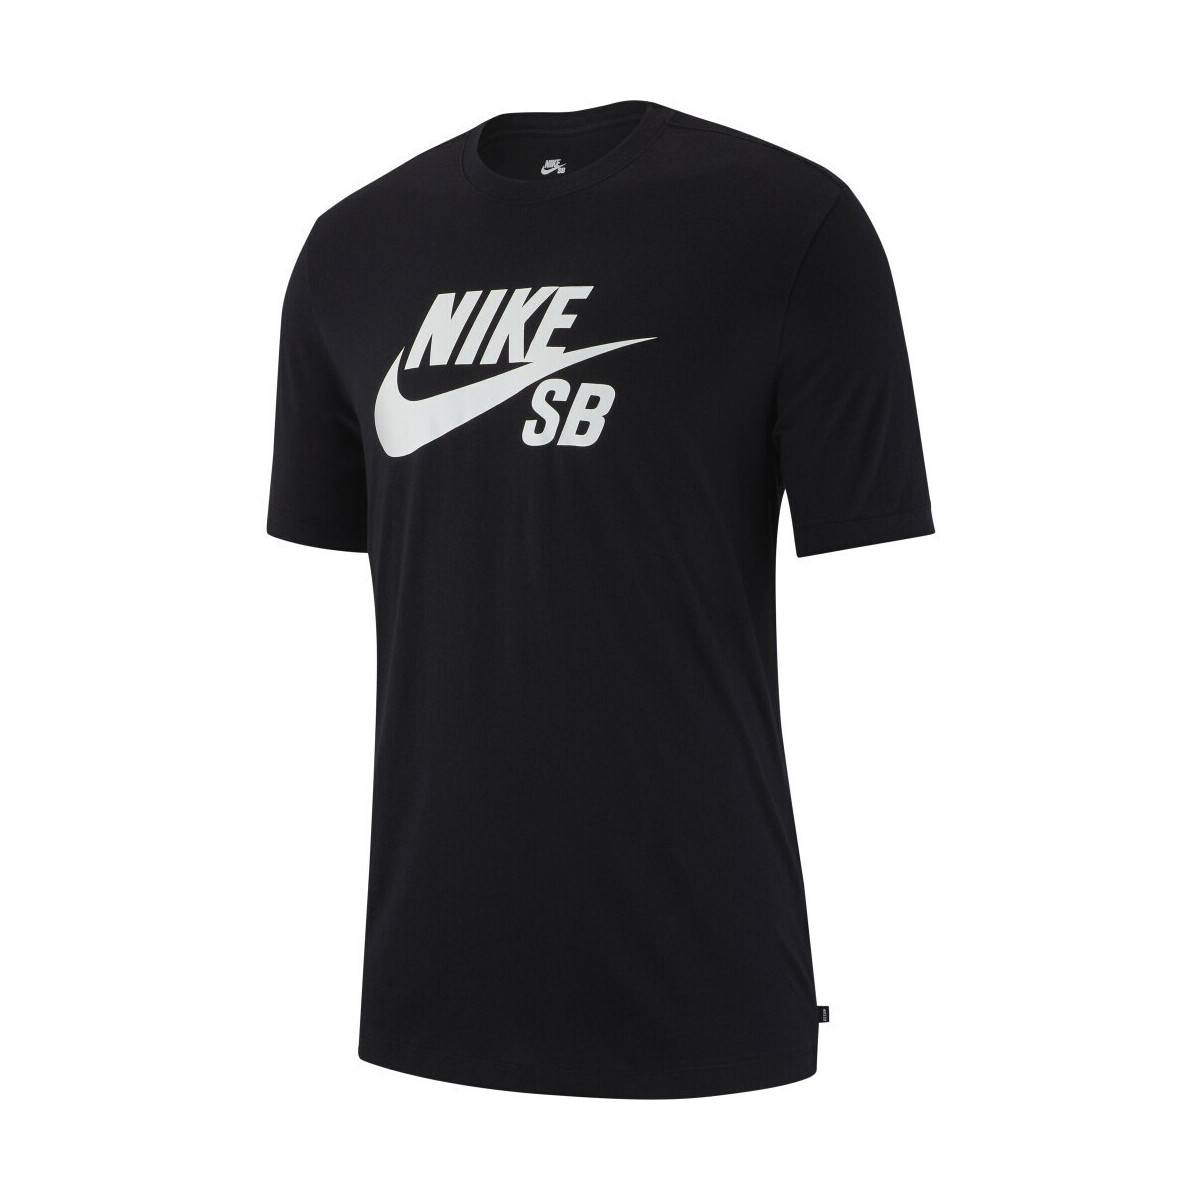 Oblačila Moški Majice & Polo majice Nike M nk sb dry tee dfct logo Črna